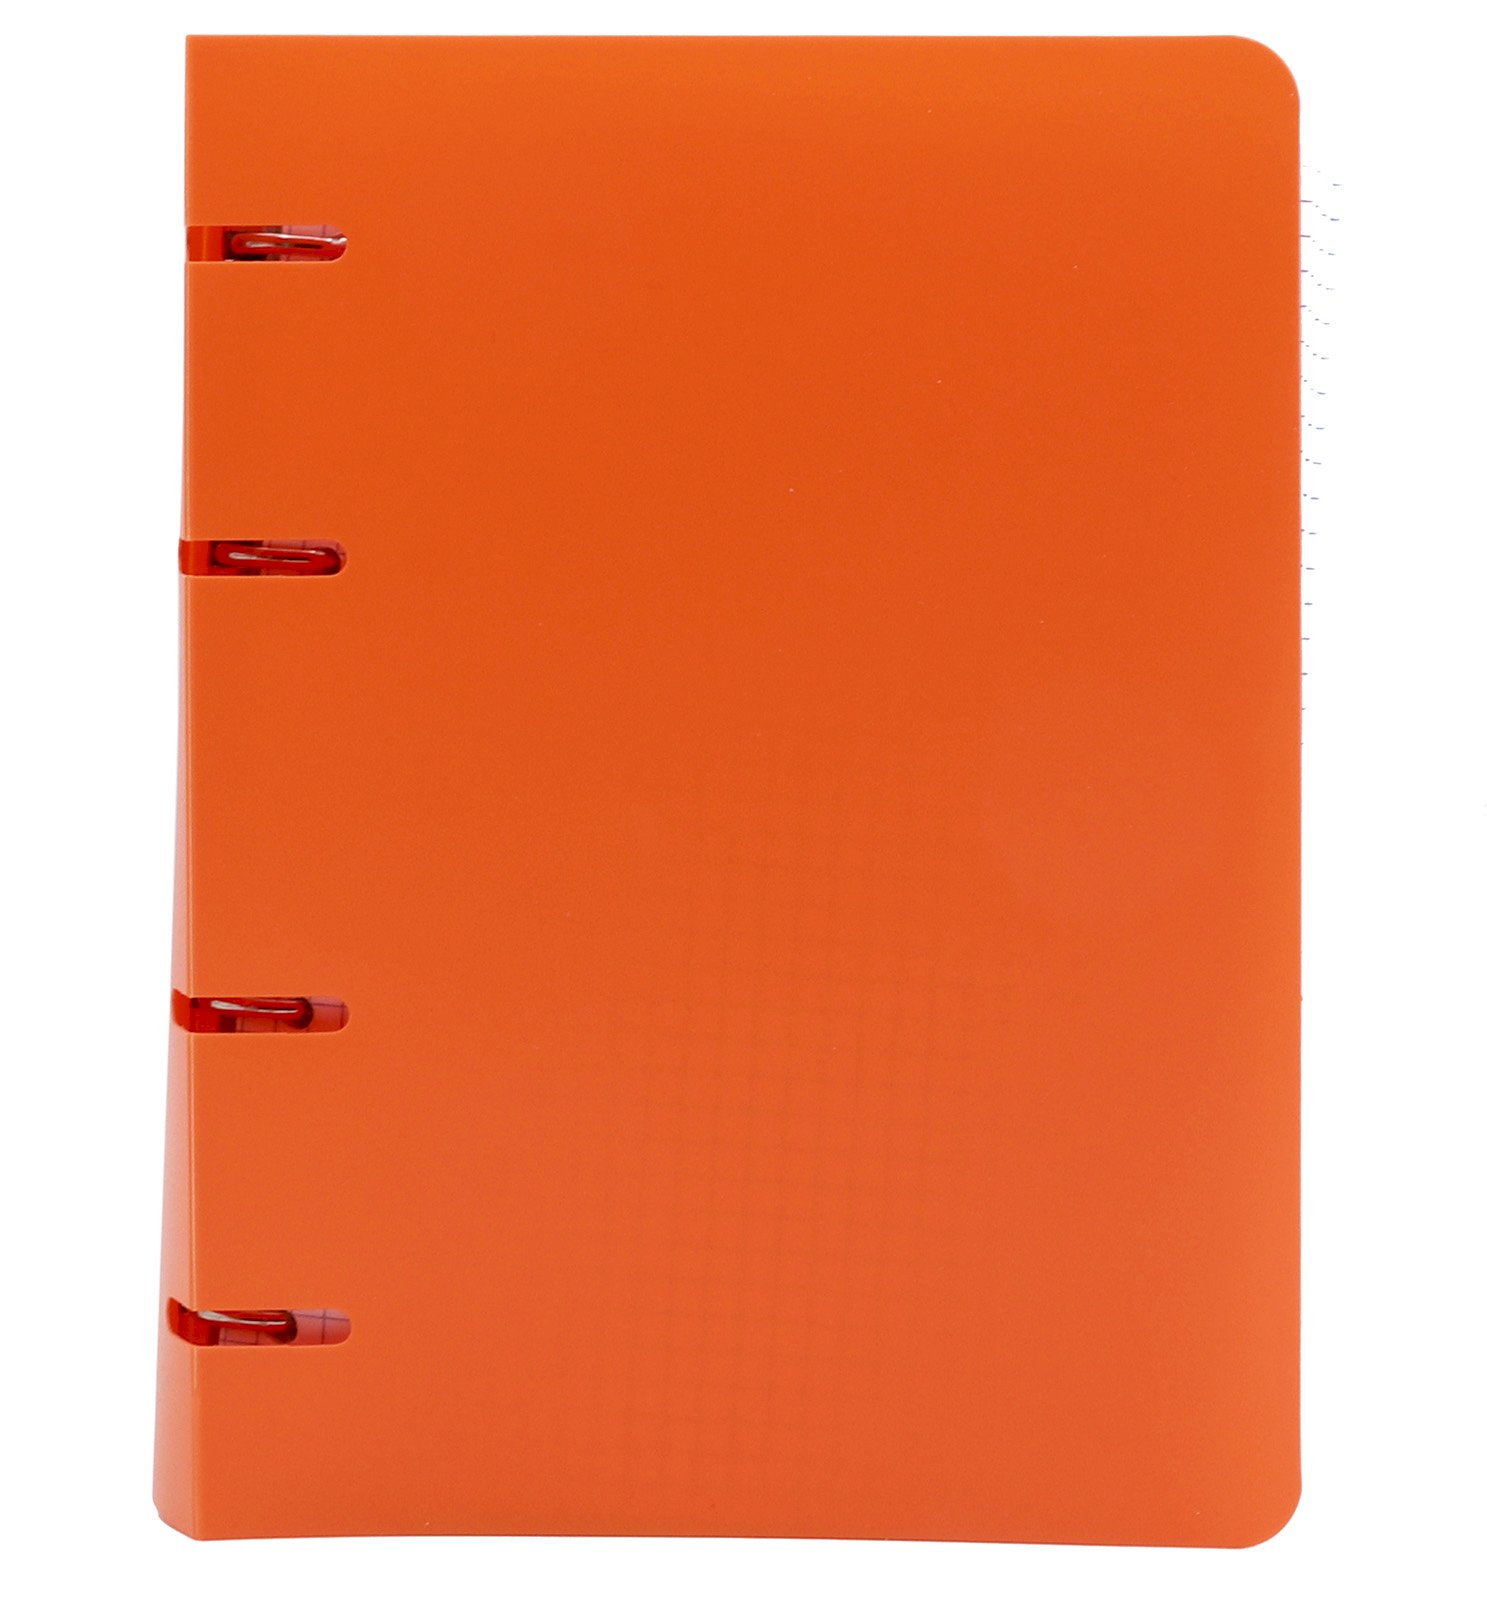 Тетрадь на кольцах ПандаРог оснащена обложкой из гибкого пластика оранжевого цвета. Сменный блок тетради включает в себя 80 листов в клетку плотностью 60 г/м2. Предназначена для ведения записей, используется в учебных заведениях, офисах, дома. Разъемные кольца обеспечивают возможность замены листов, ведения конспектов по нескольким предметам или офисным задачам. Тетрадь совместима с перфорированными разделителями для тетрадей соответствующего формата. Формат А5 позволяет переносить тетрадь в сумке, рюкзаке или портфеле. Скругленные углы тетради предохраняют внутреннюю подкладку сумки от повреждений. Размер тетради 16х21,5 см. Ширина корешка 25 мм.